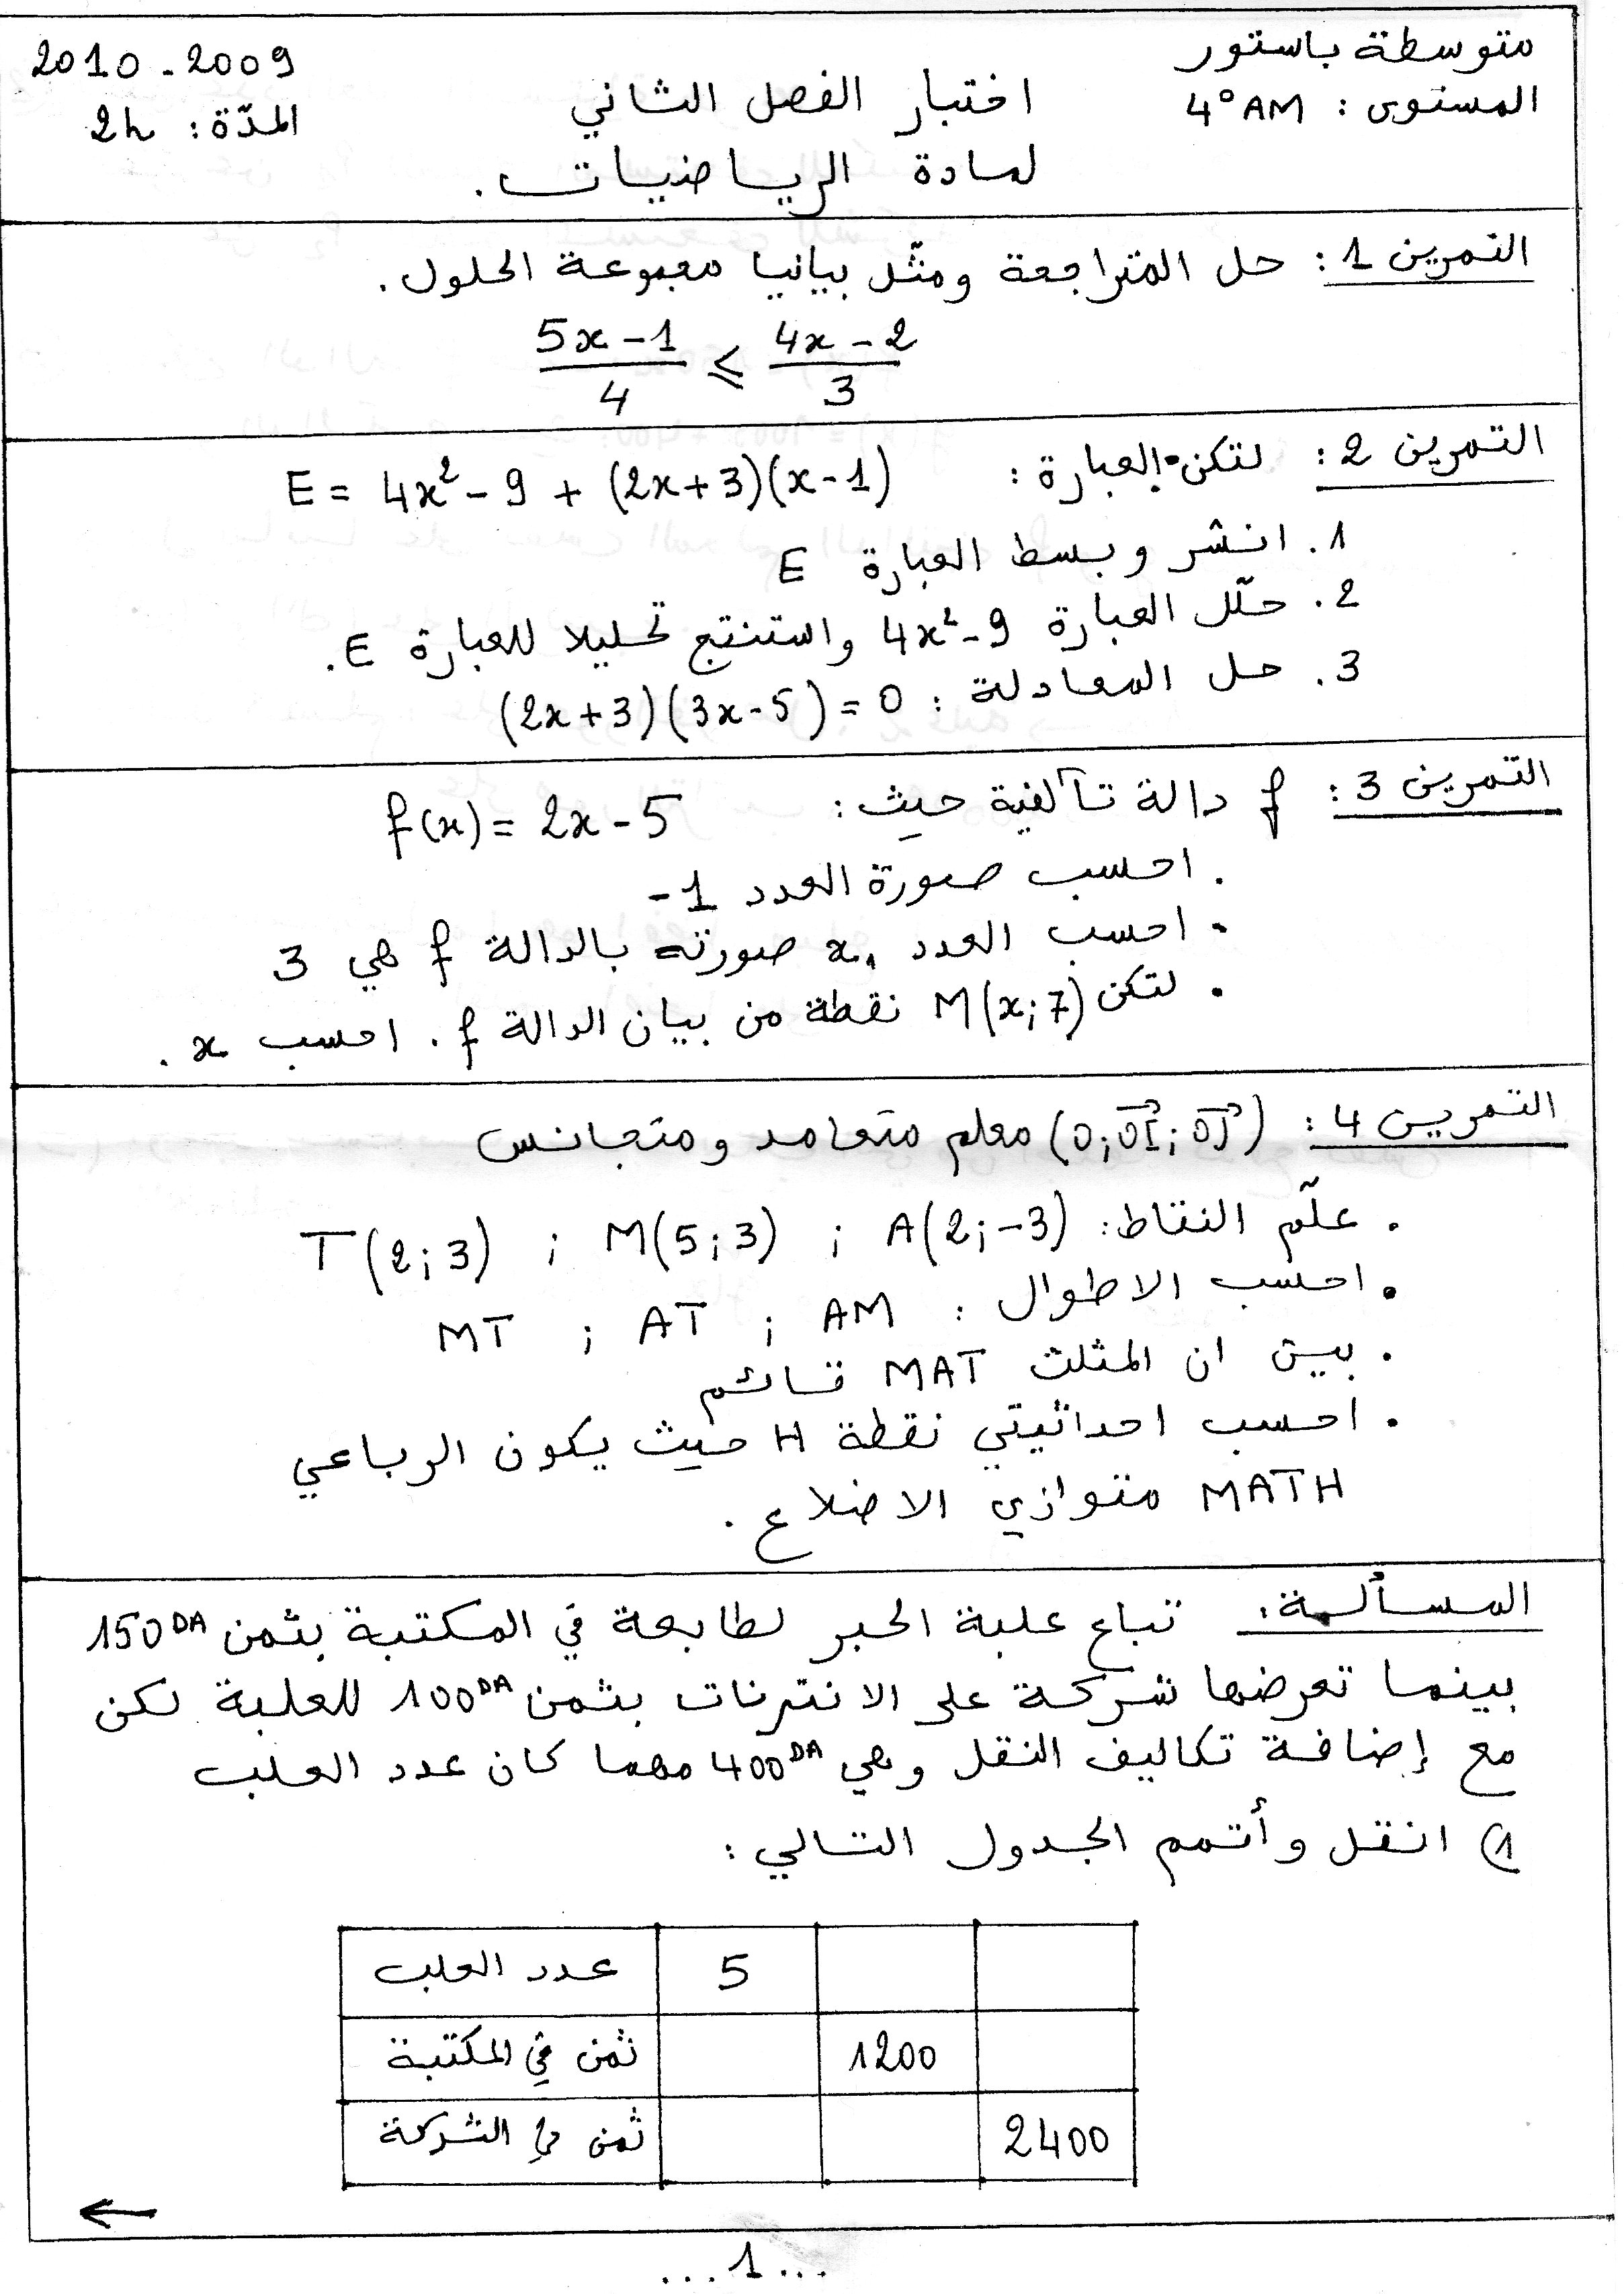 اختبار الفصل الثاني لمادة الرياضيات السنة الرابعة متوسط 2009/2010 Img009